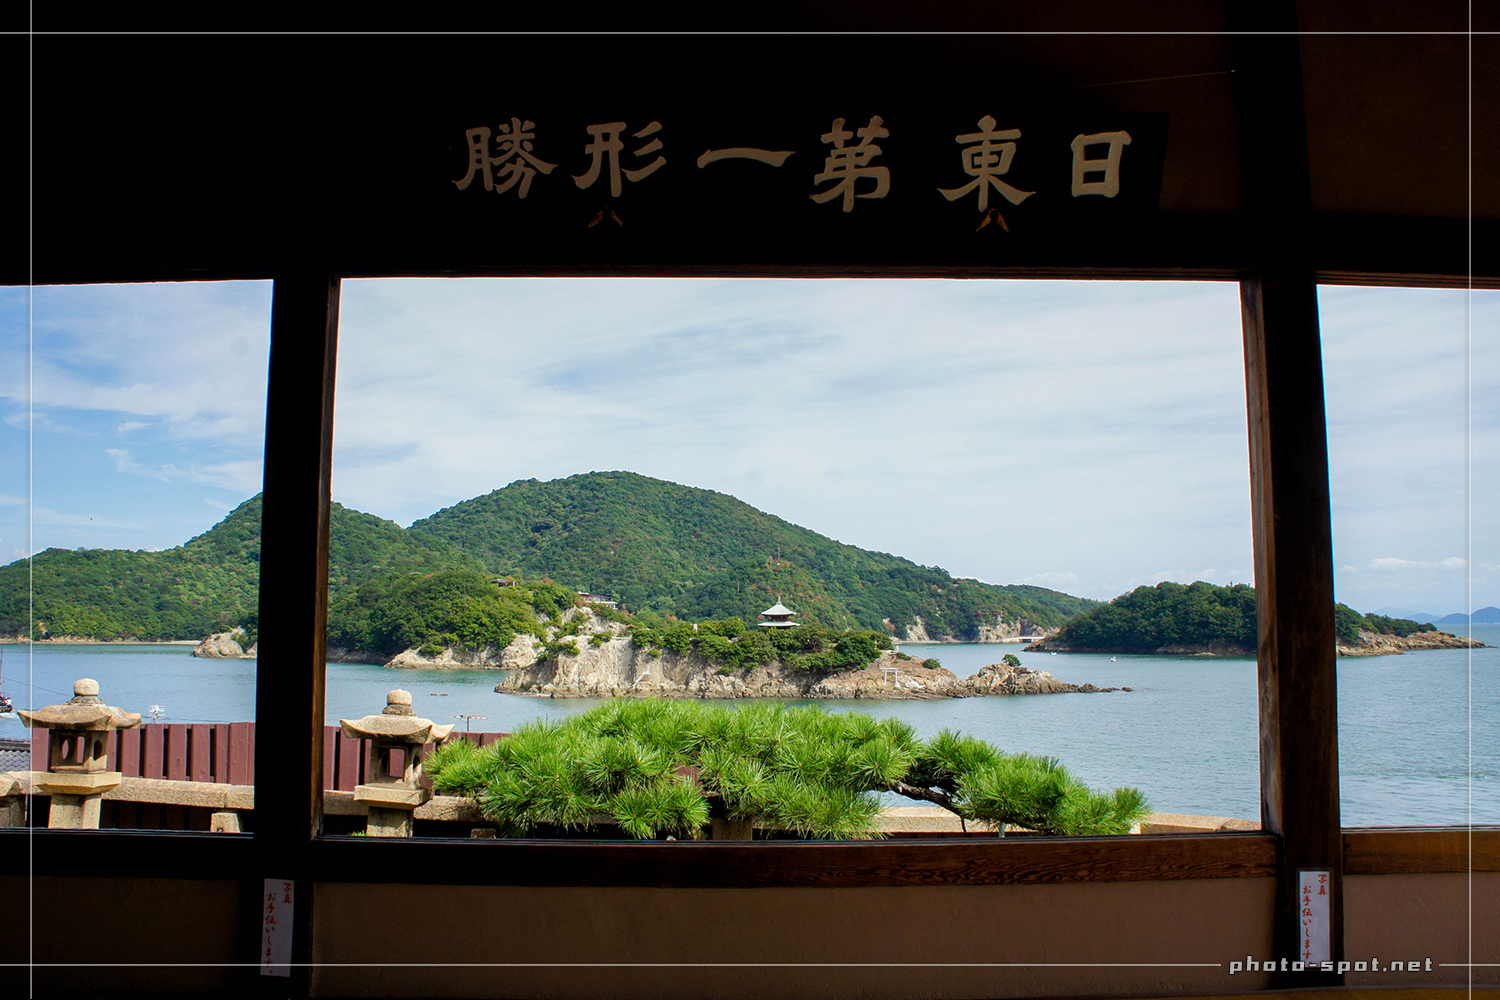 福禅寺 対潮楼の座敷から瀬戸内海を眺望